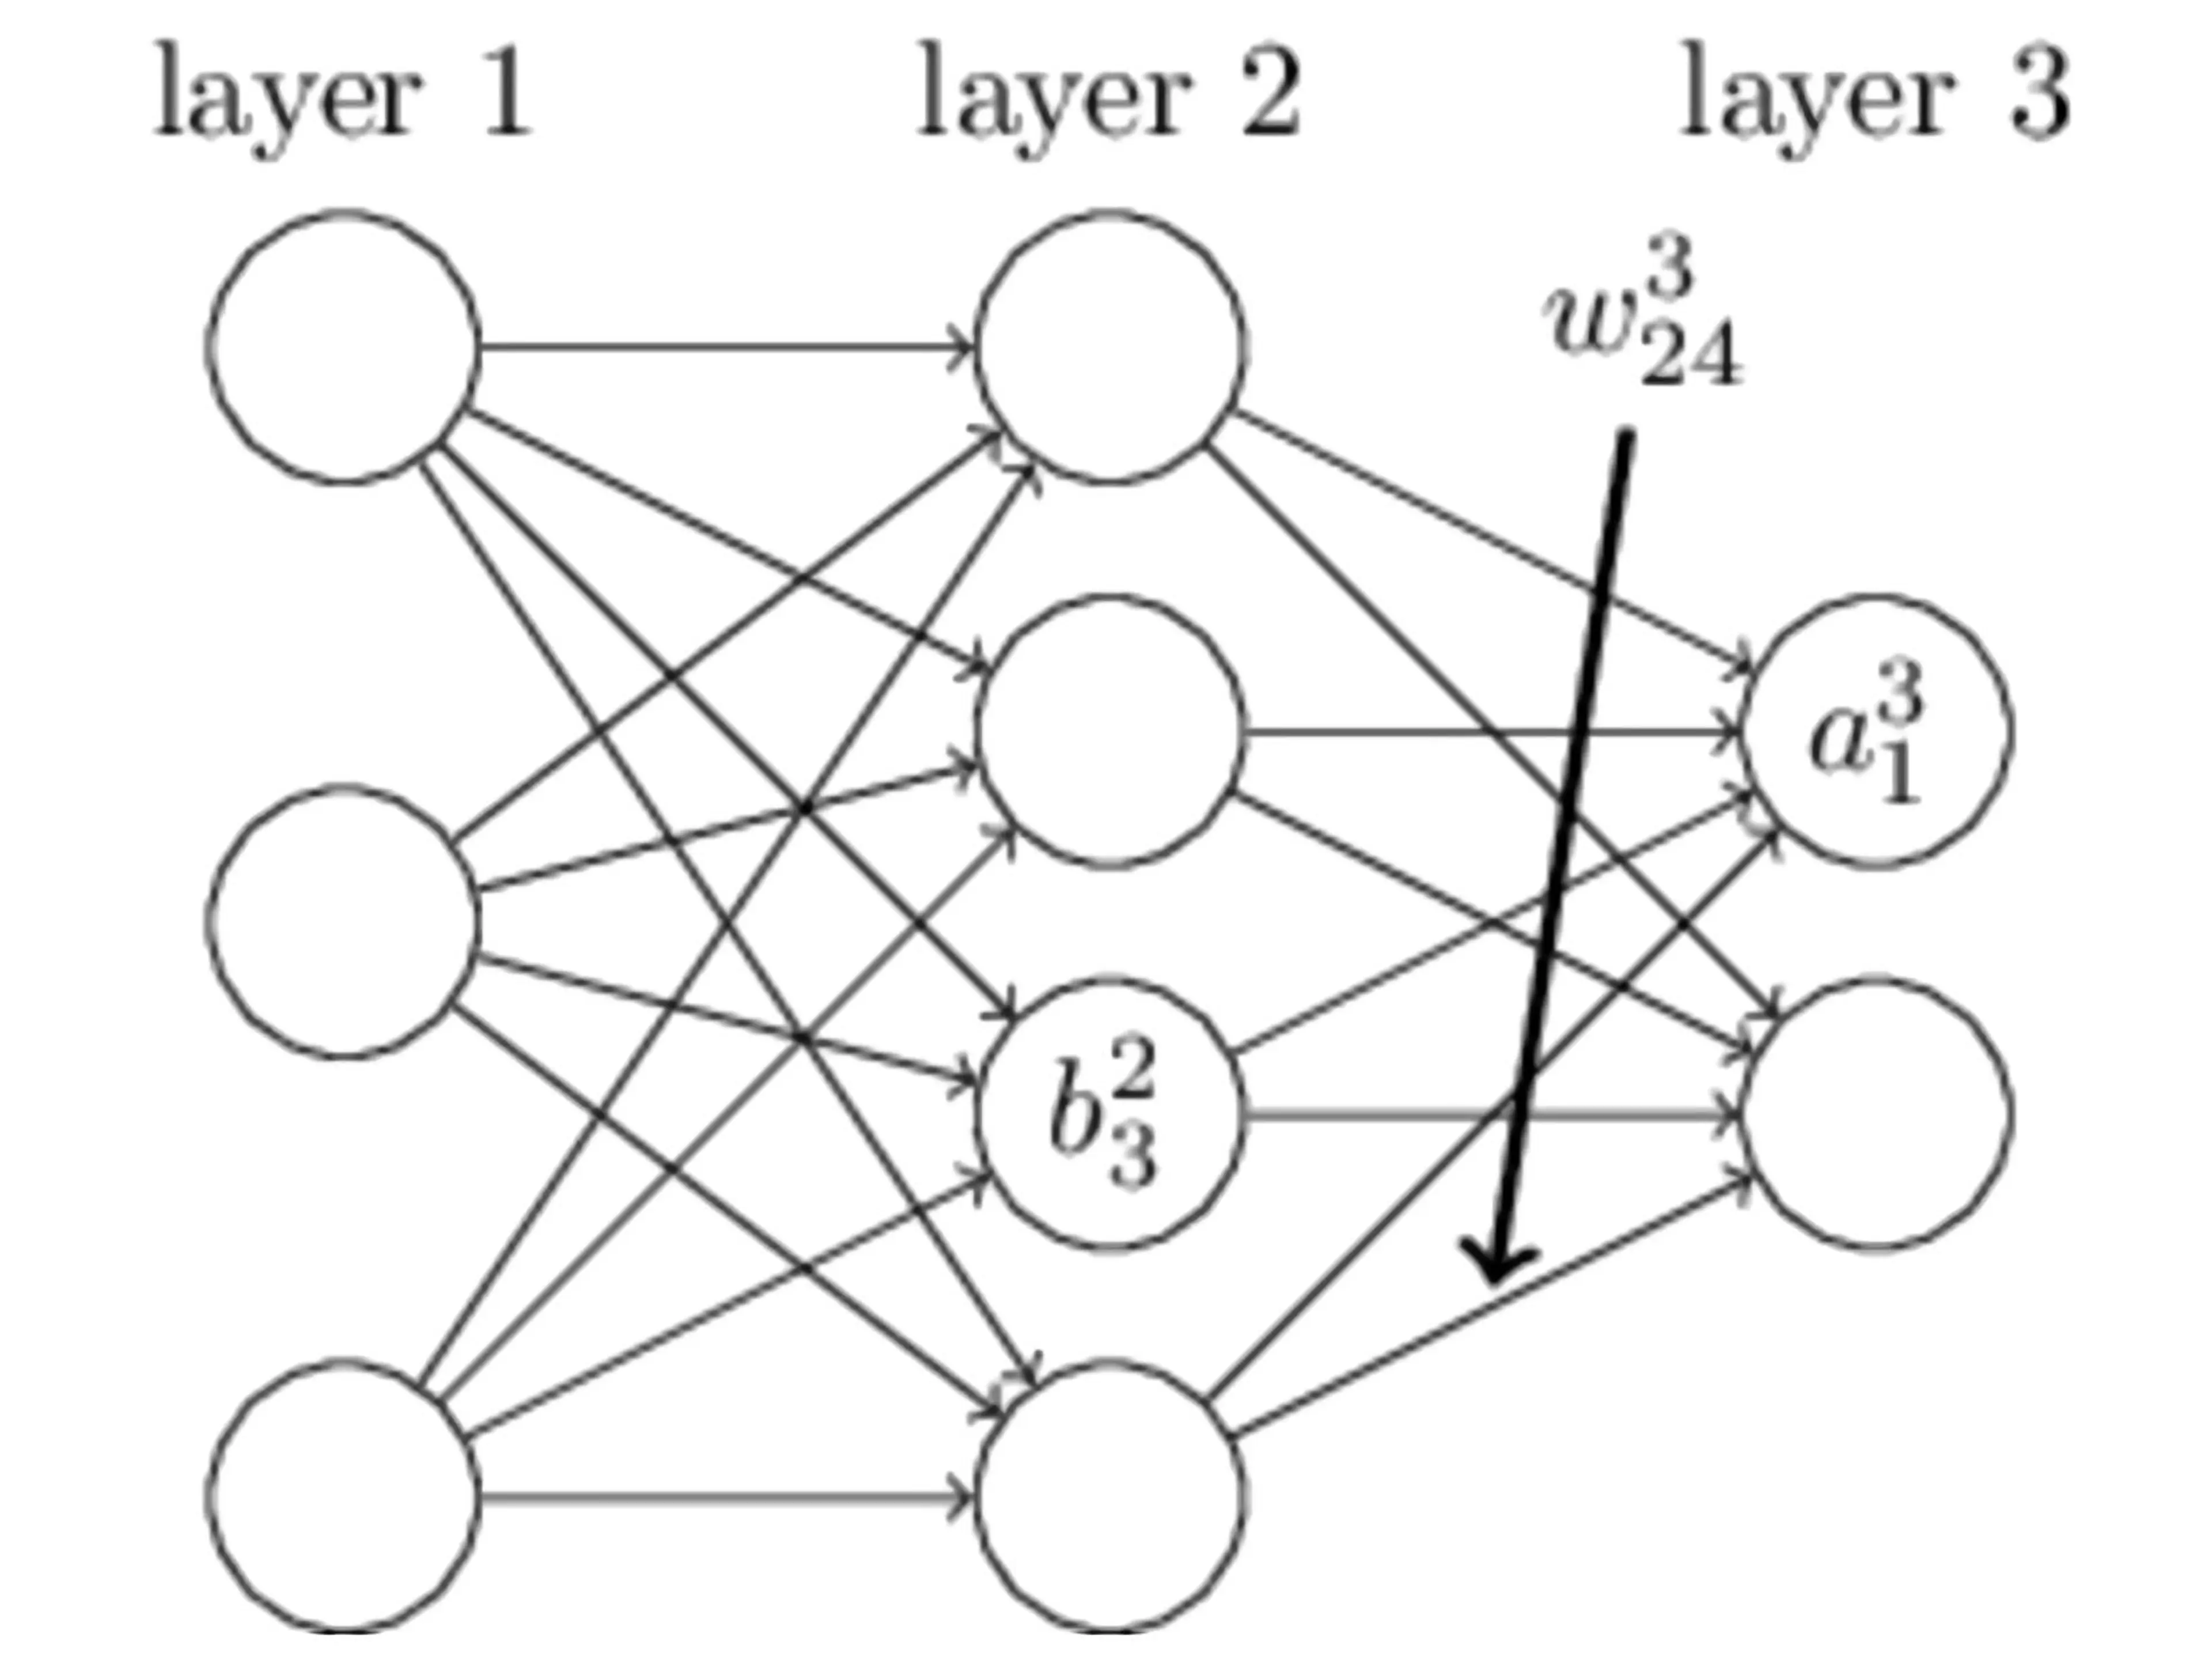 単純なニューラルネットワークの例